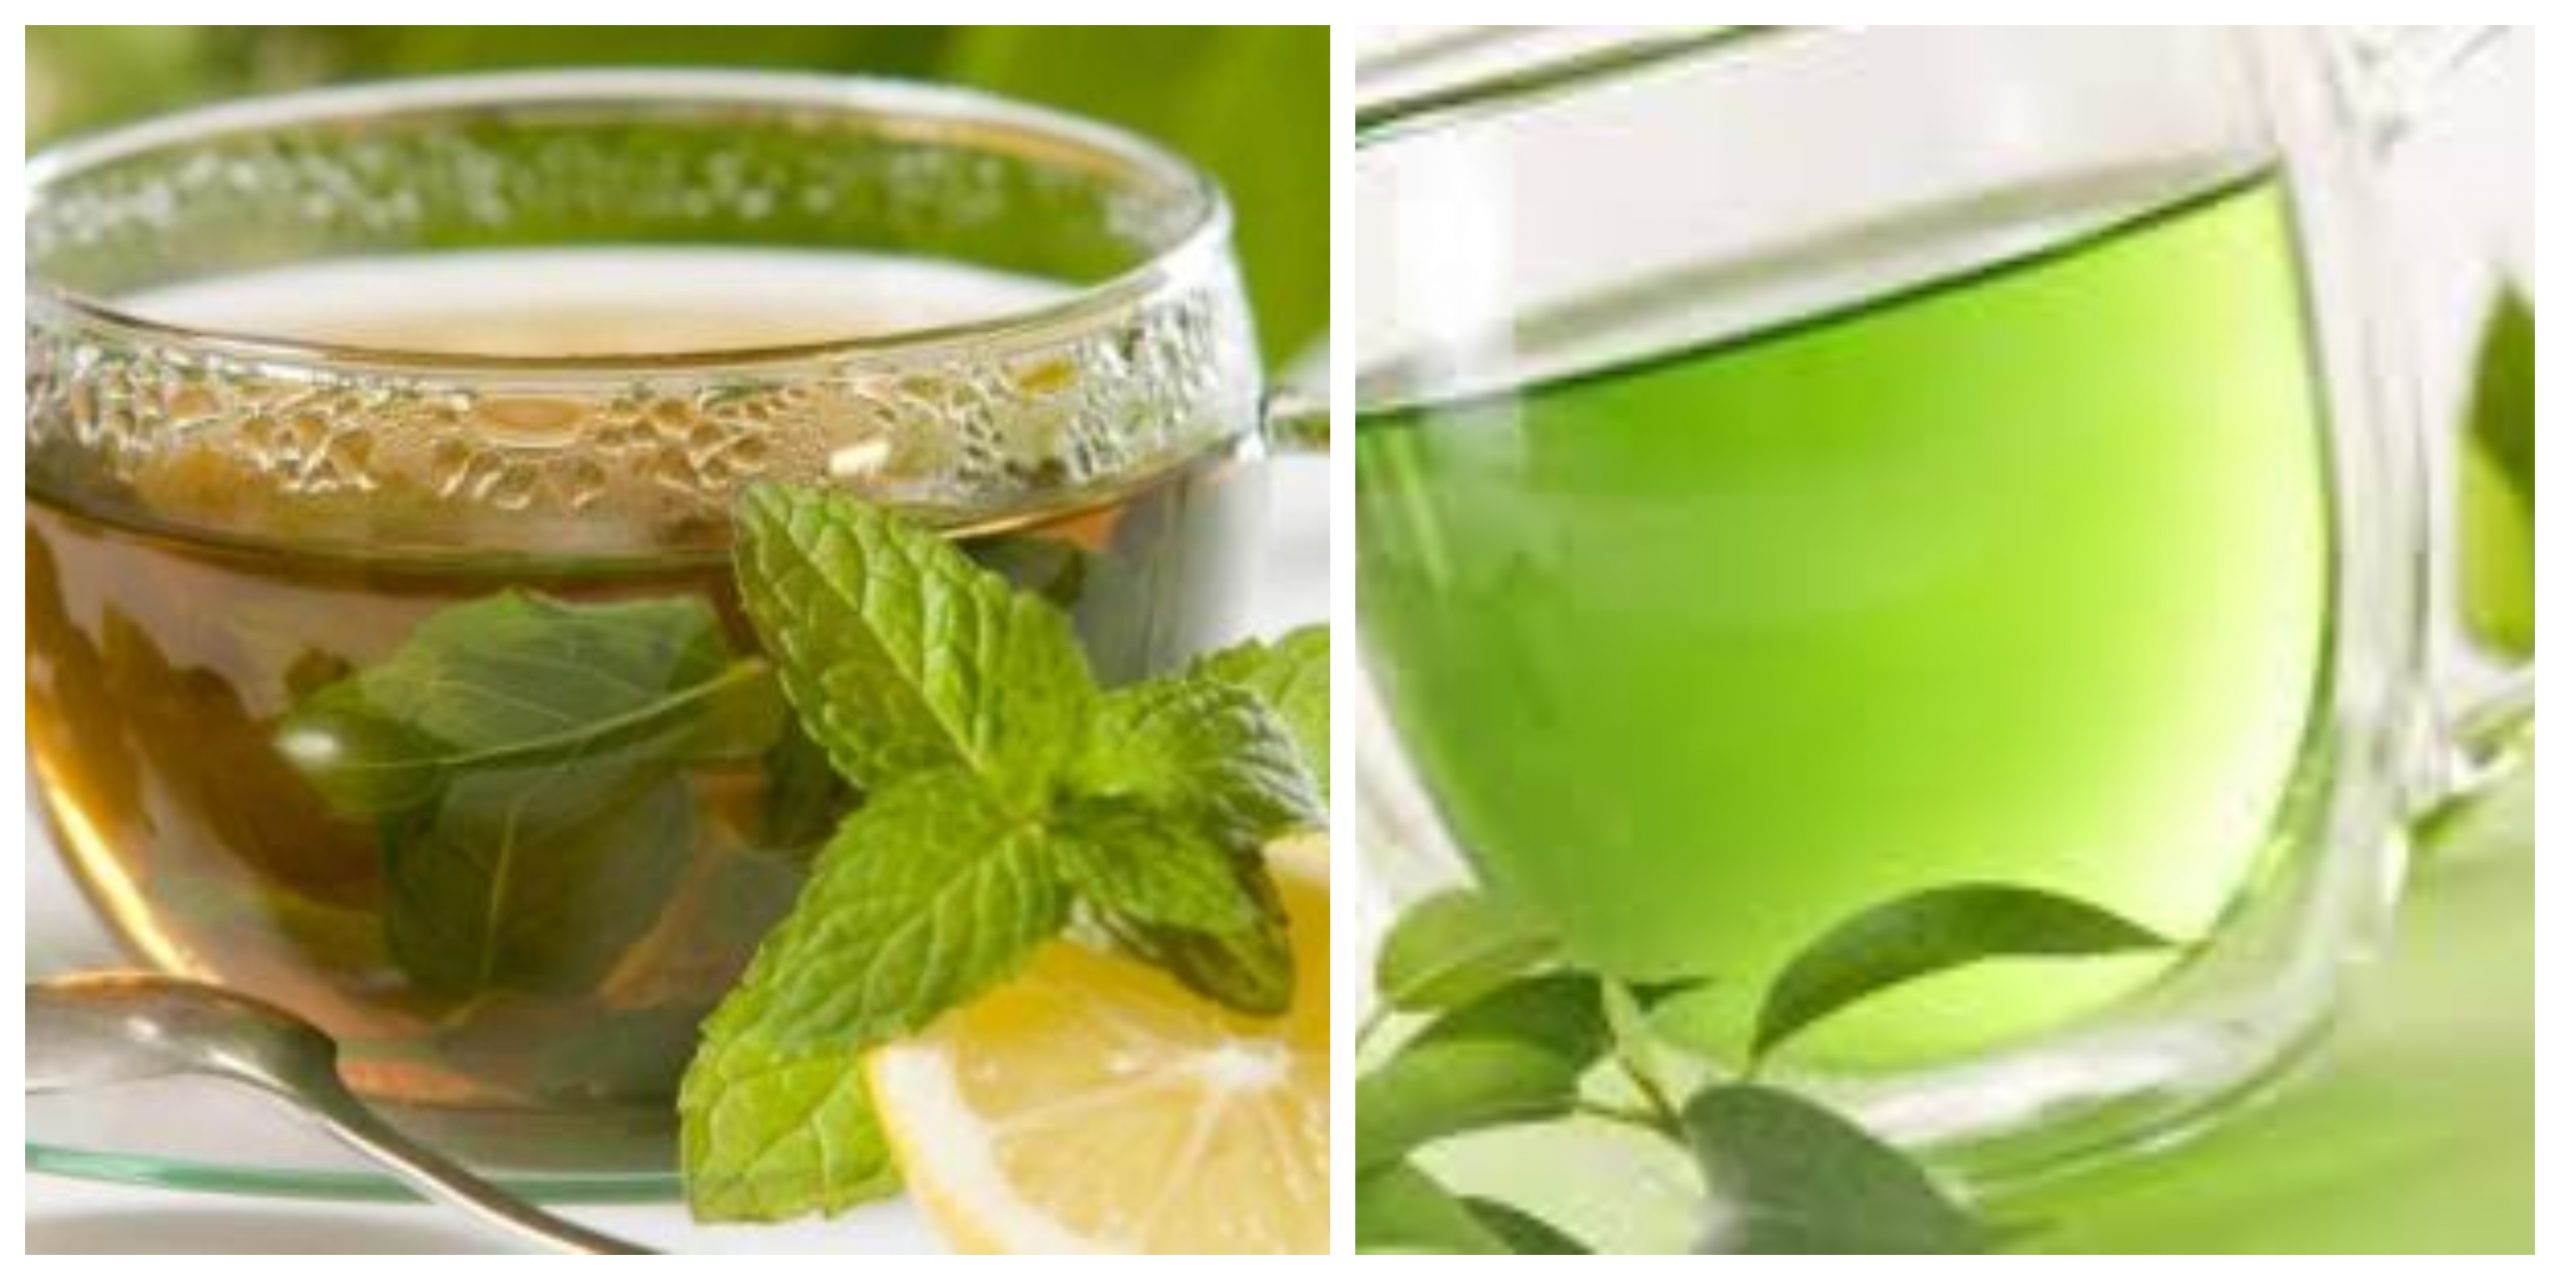 الفوائد الصحية لتناول مشروب الشاي الأخضر بالقرفة والكركم ‏ووصفة سهلة لتحضيره ‏